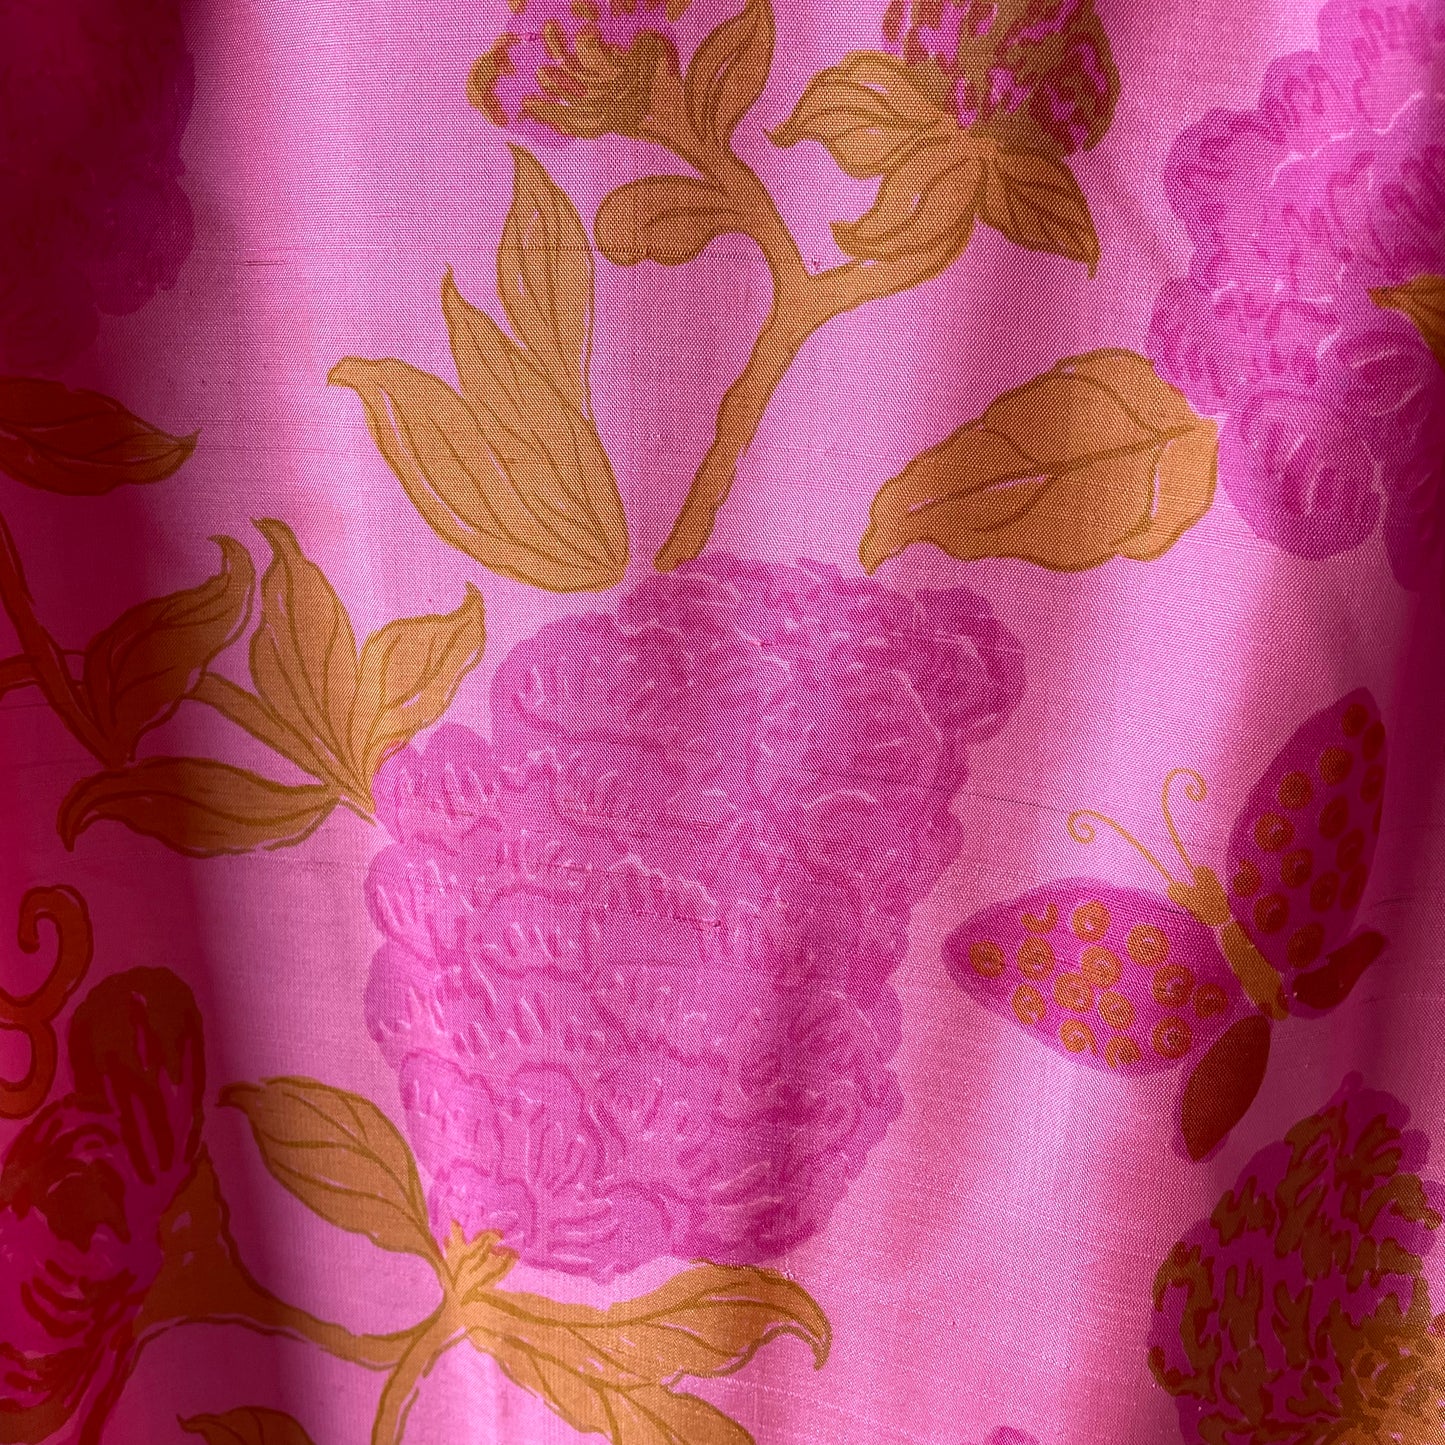 VTG Pure Silk Pink Floral Shift Dress with Belt